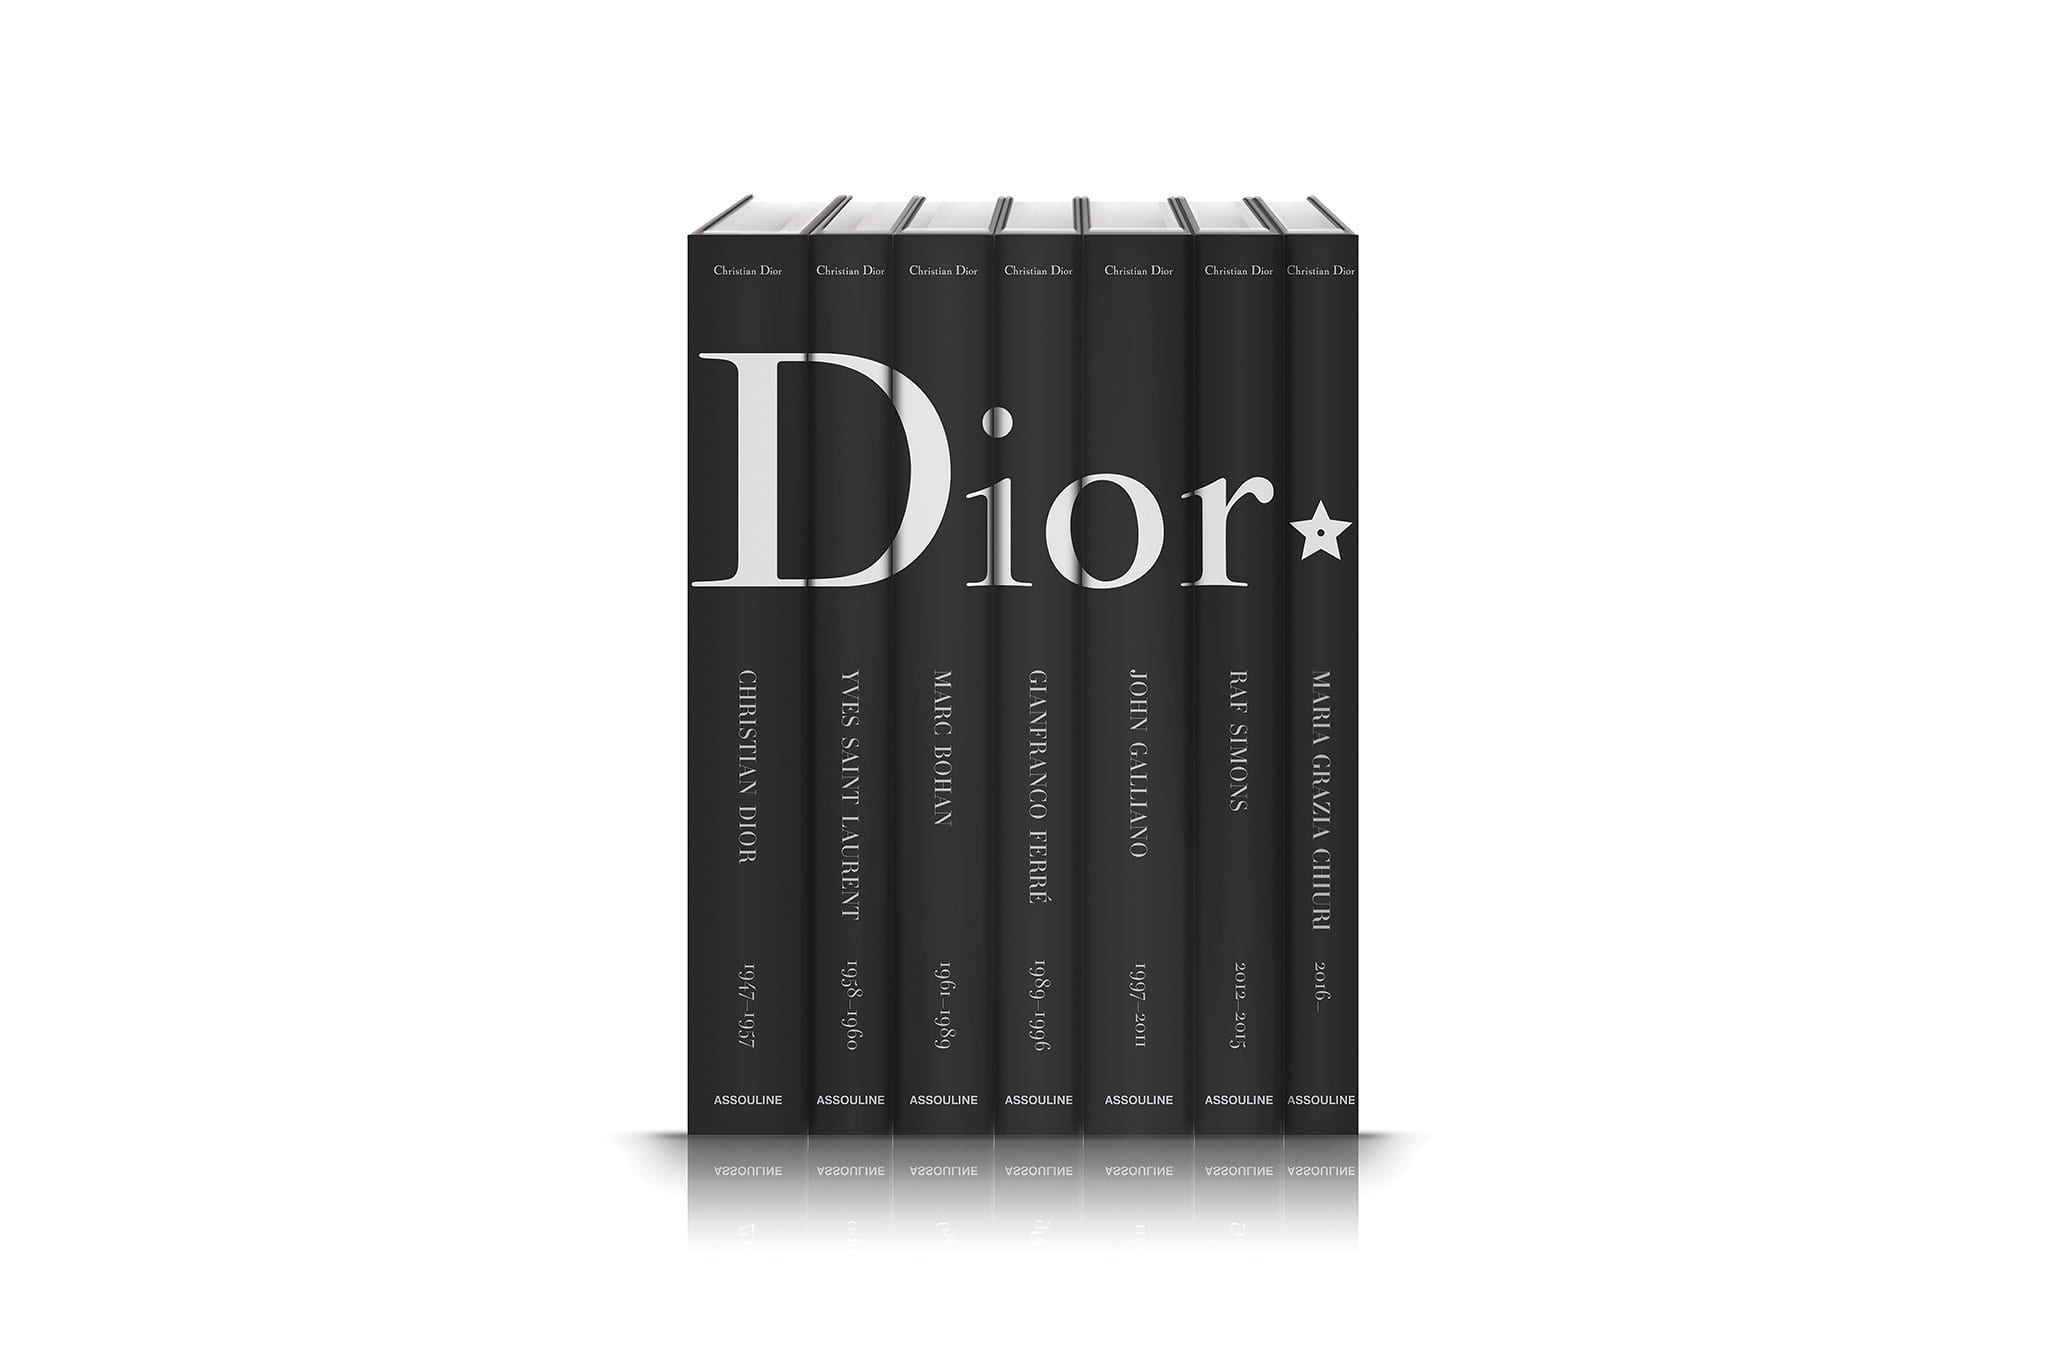 Assouline Dior od Christiana Diora